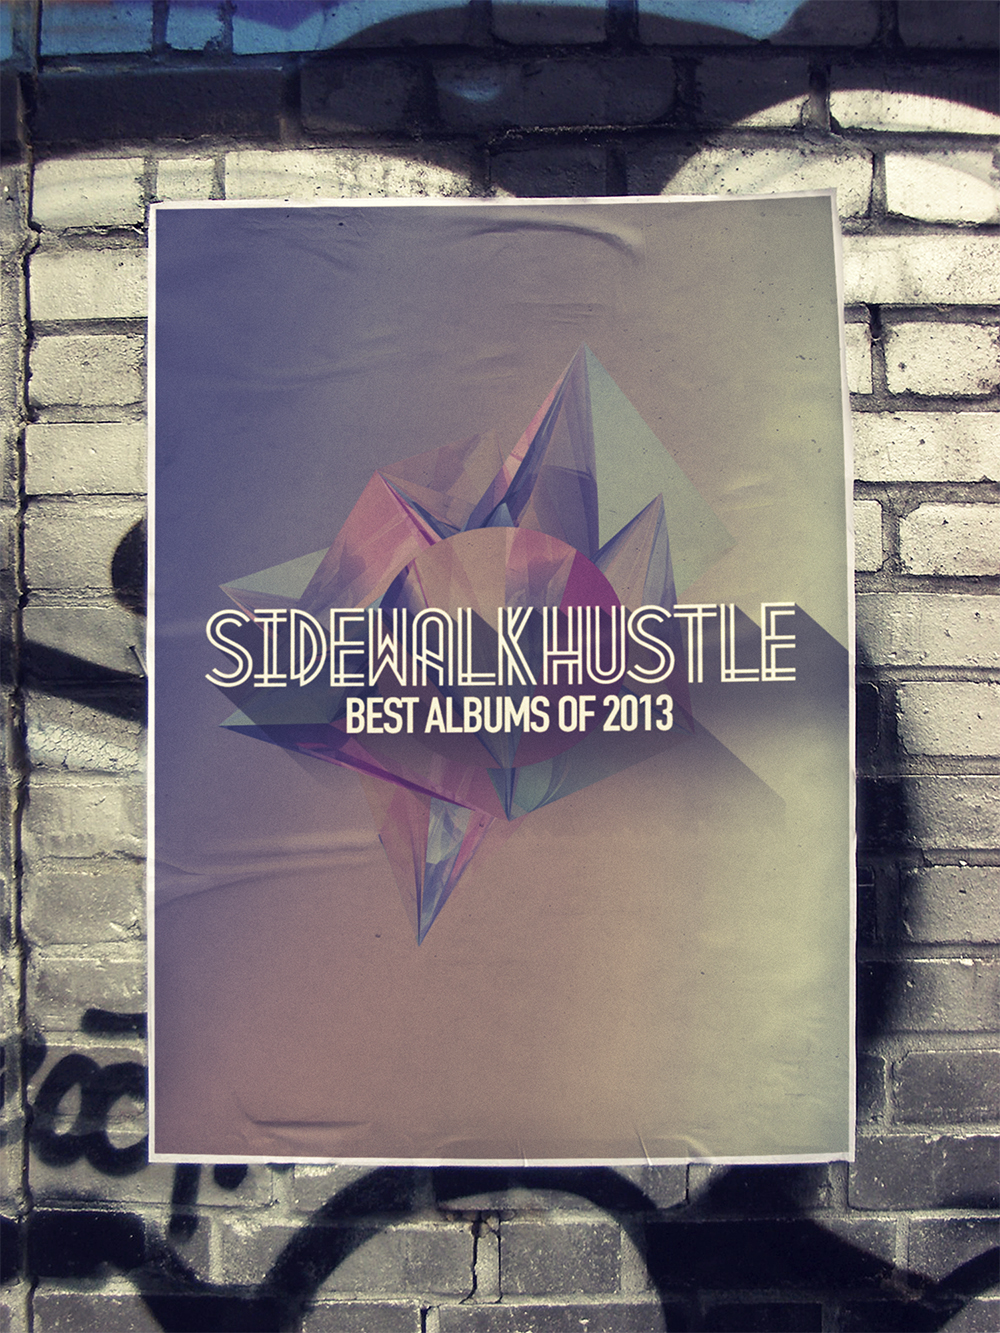 Sidewalk Hustle Top 10 Albums of 2013